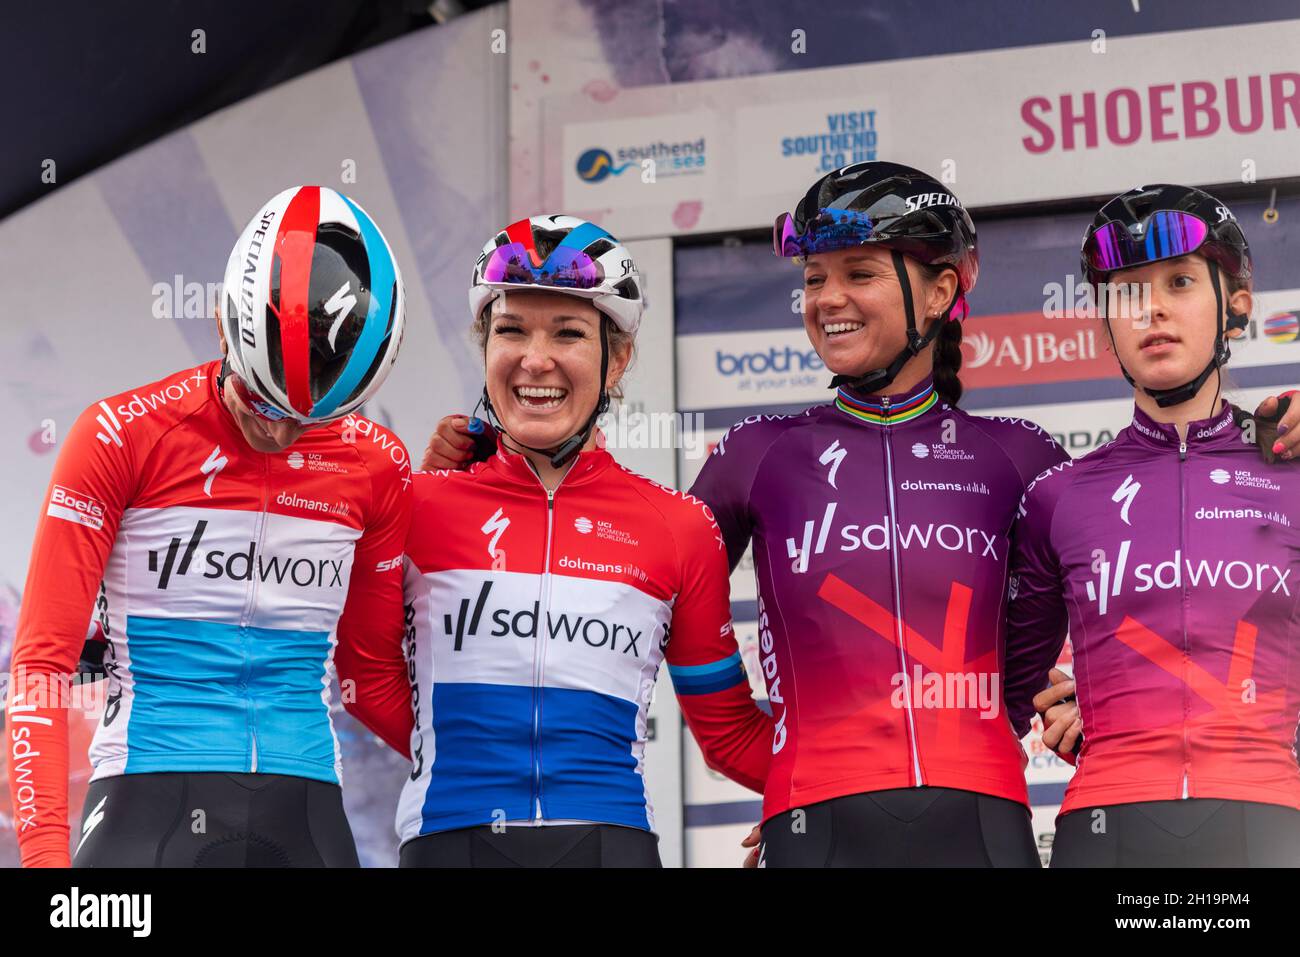 Christine Majerus, Amy Pieters, Chantal Blaak, Anna Shackley vom Team SD Worx bei der Vorbereitung auf das Women's Tour-Radrennen Etappe 4, Shoeburyness Stockfoto